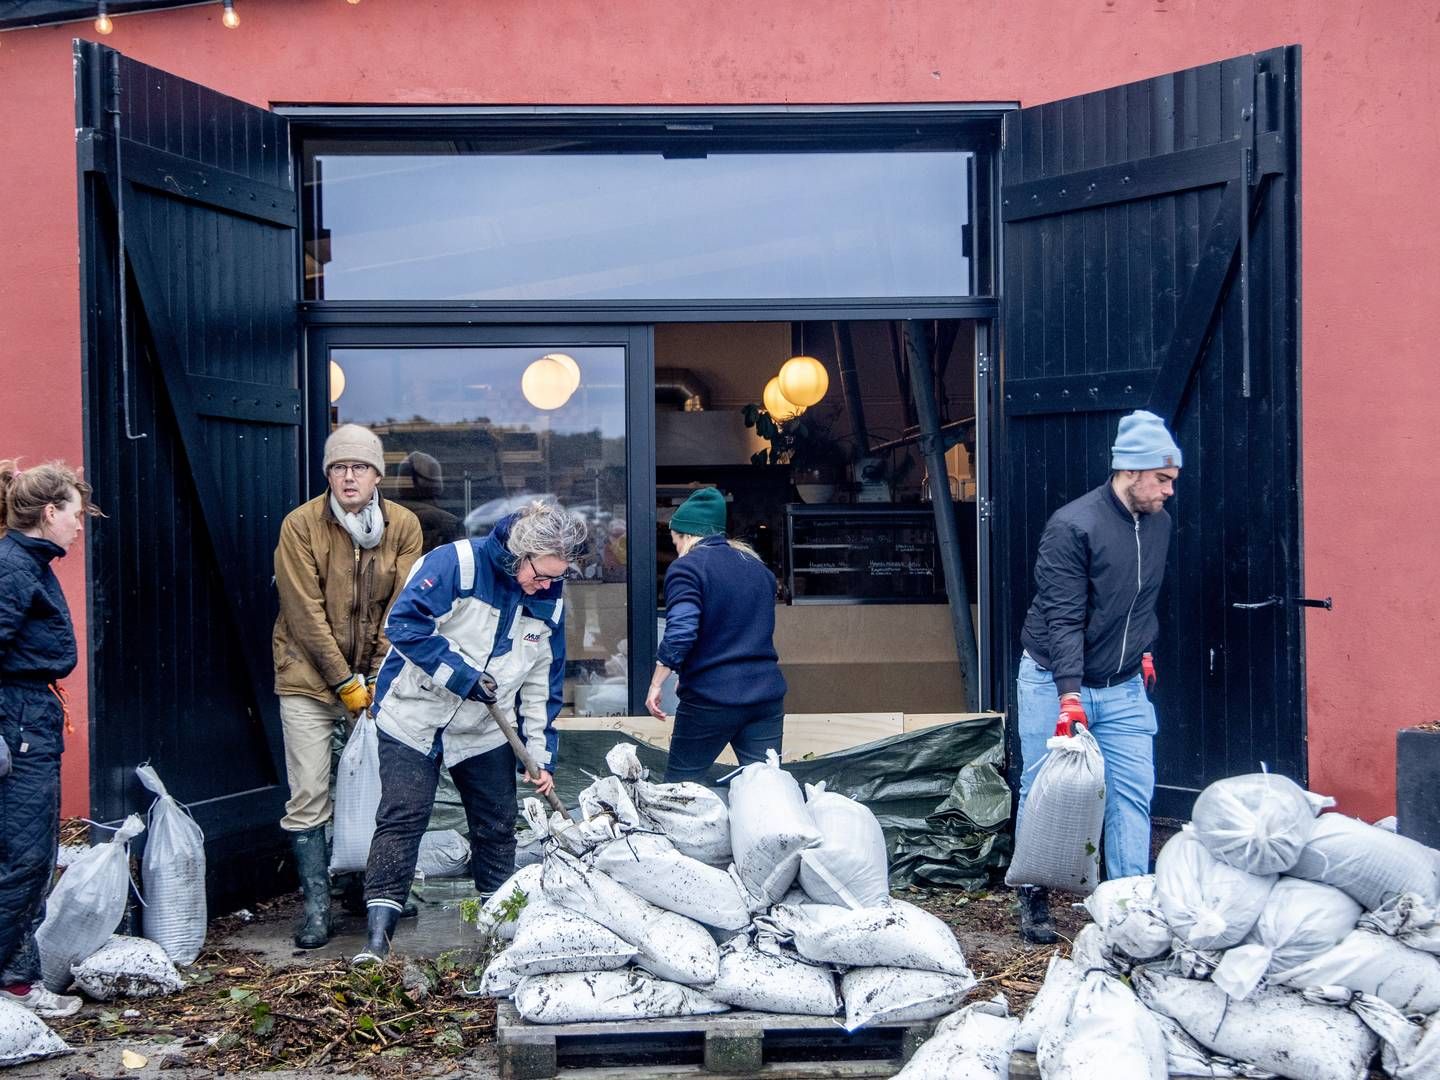 Oprydningen og genopbygningen efter weekendens storm og stormflod kan komme til at tage lang tid, vurderer lokale forsikringsselskaber. Her er det Hesnæs på Falster. | Foto: Ingrid Riis/Ritzau Scanpix